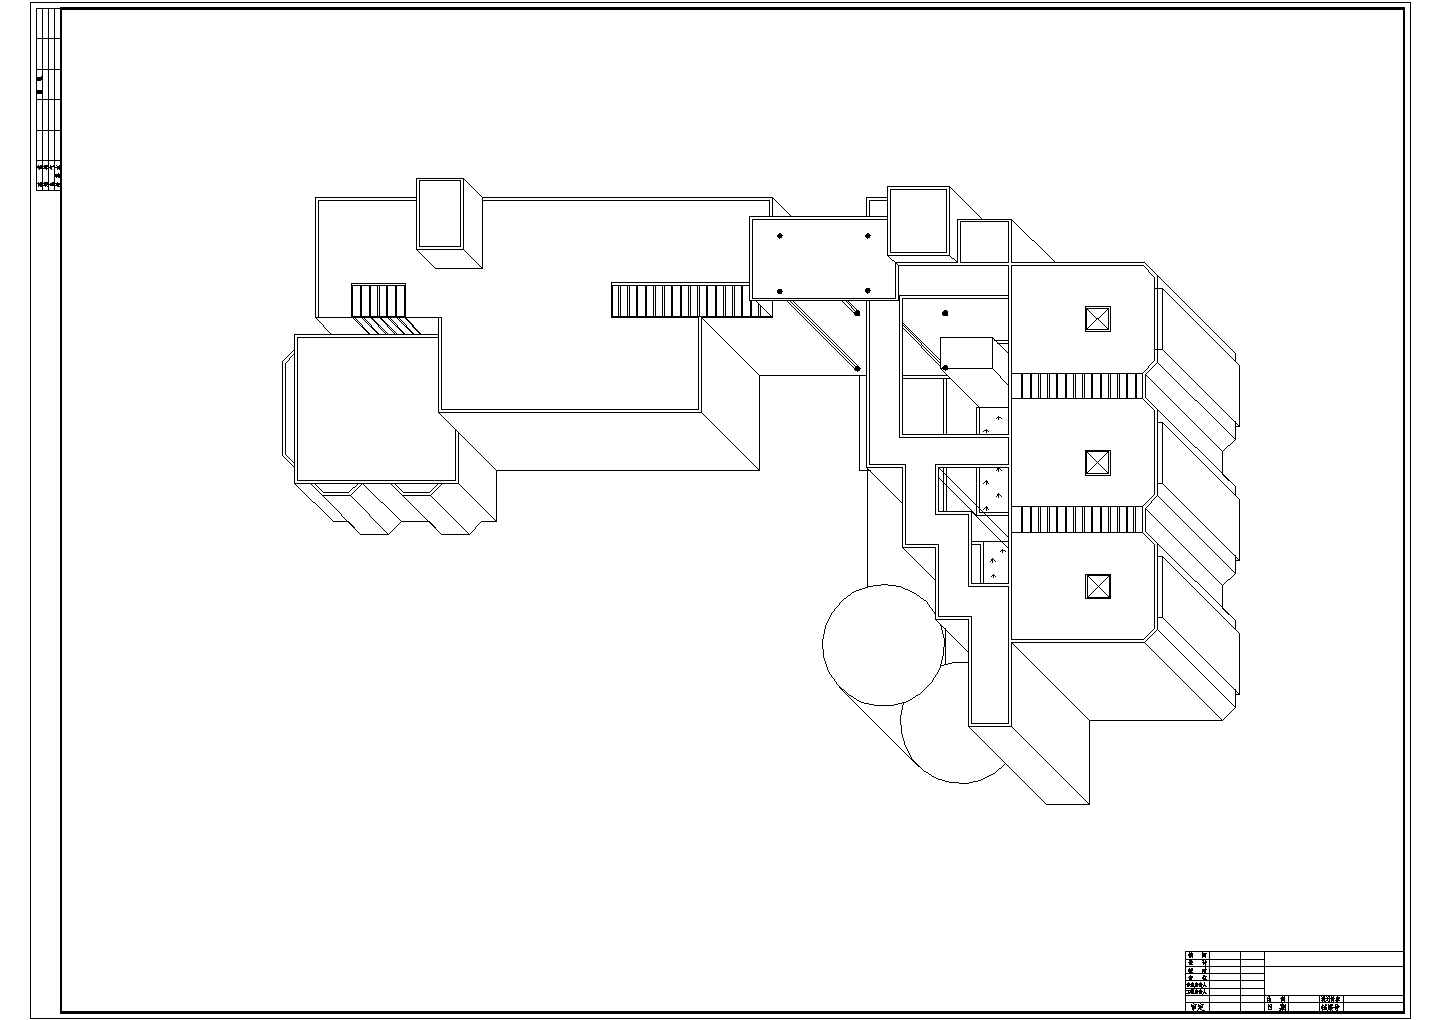 某长73.9米 宽43.3米 2层展览馆建筑CAD方案设计图【平立剖（图纸简单）】